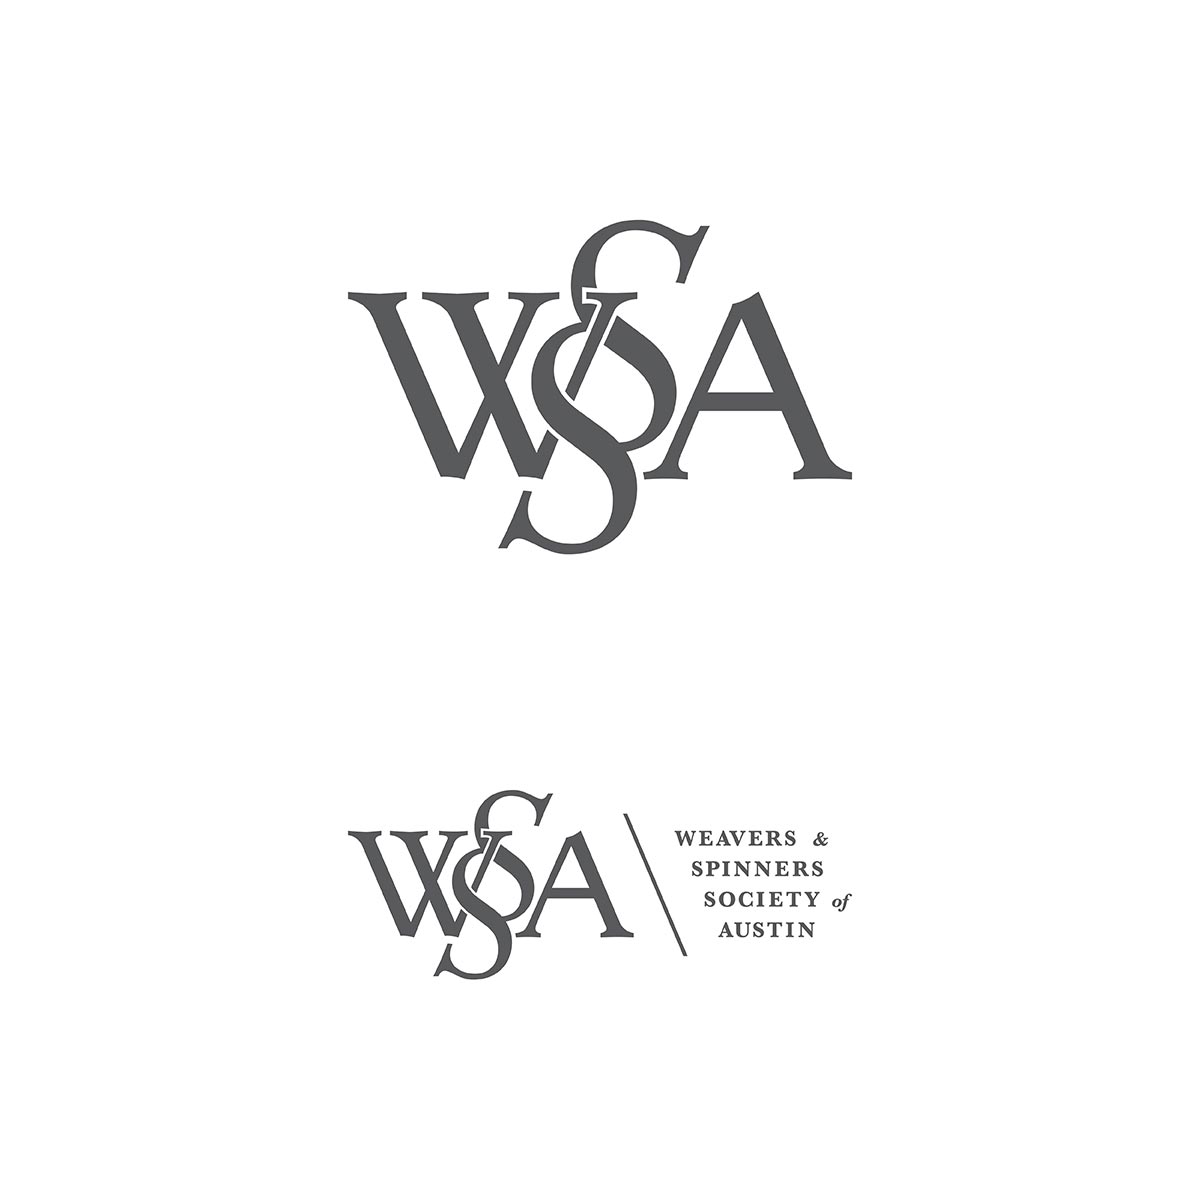 smaller logos